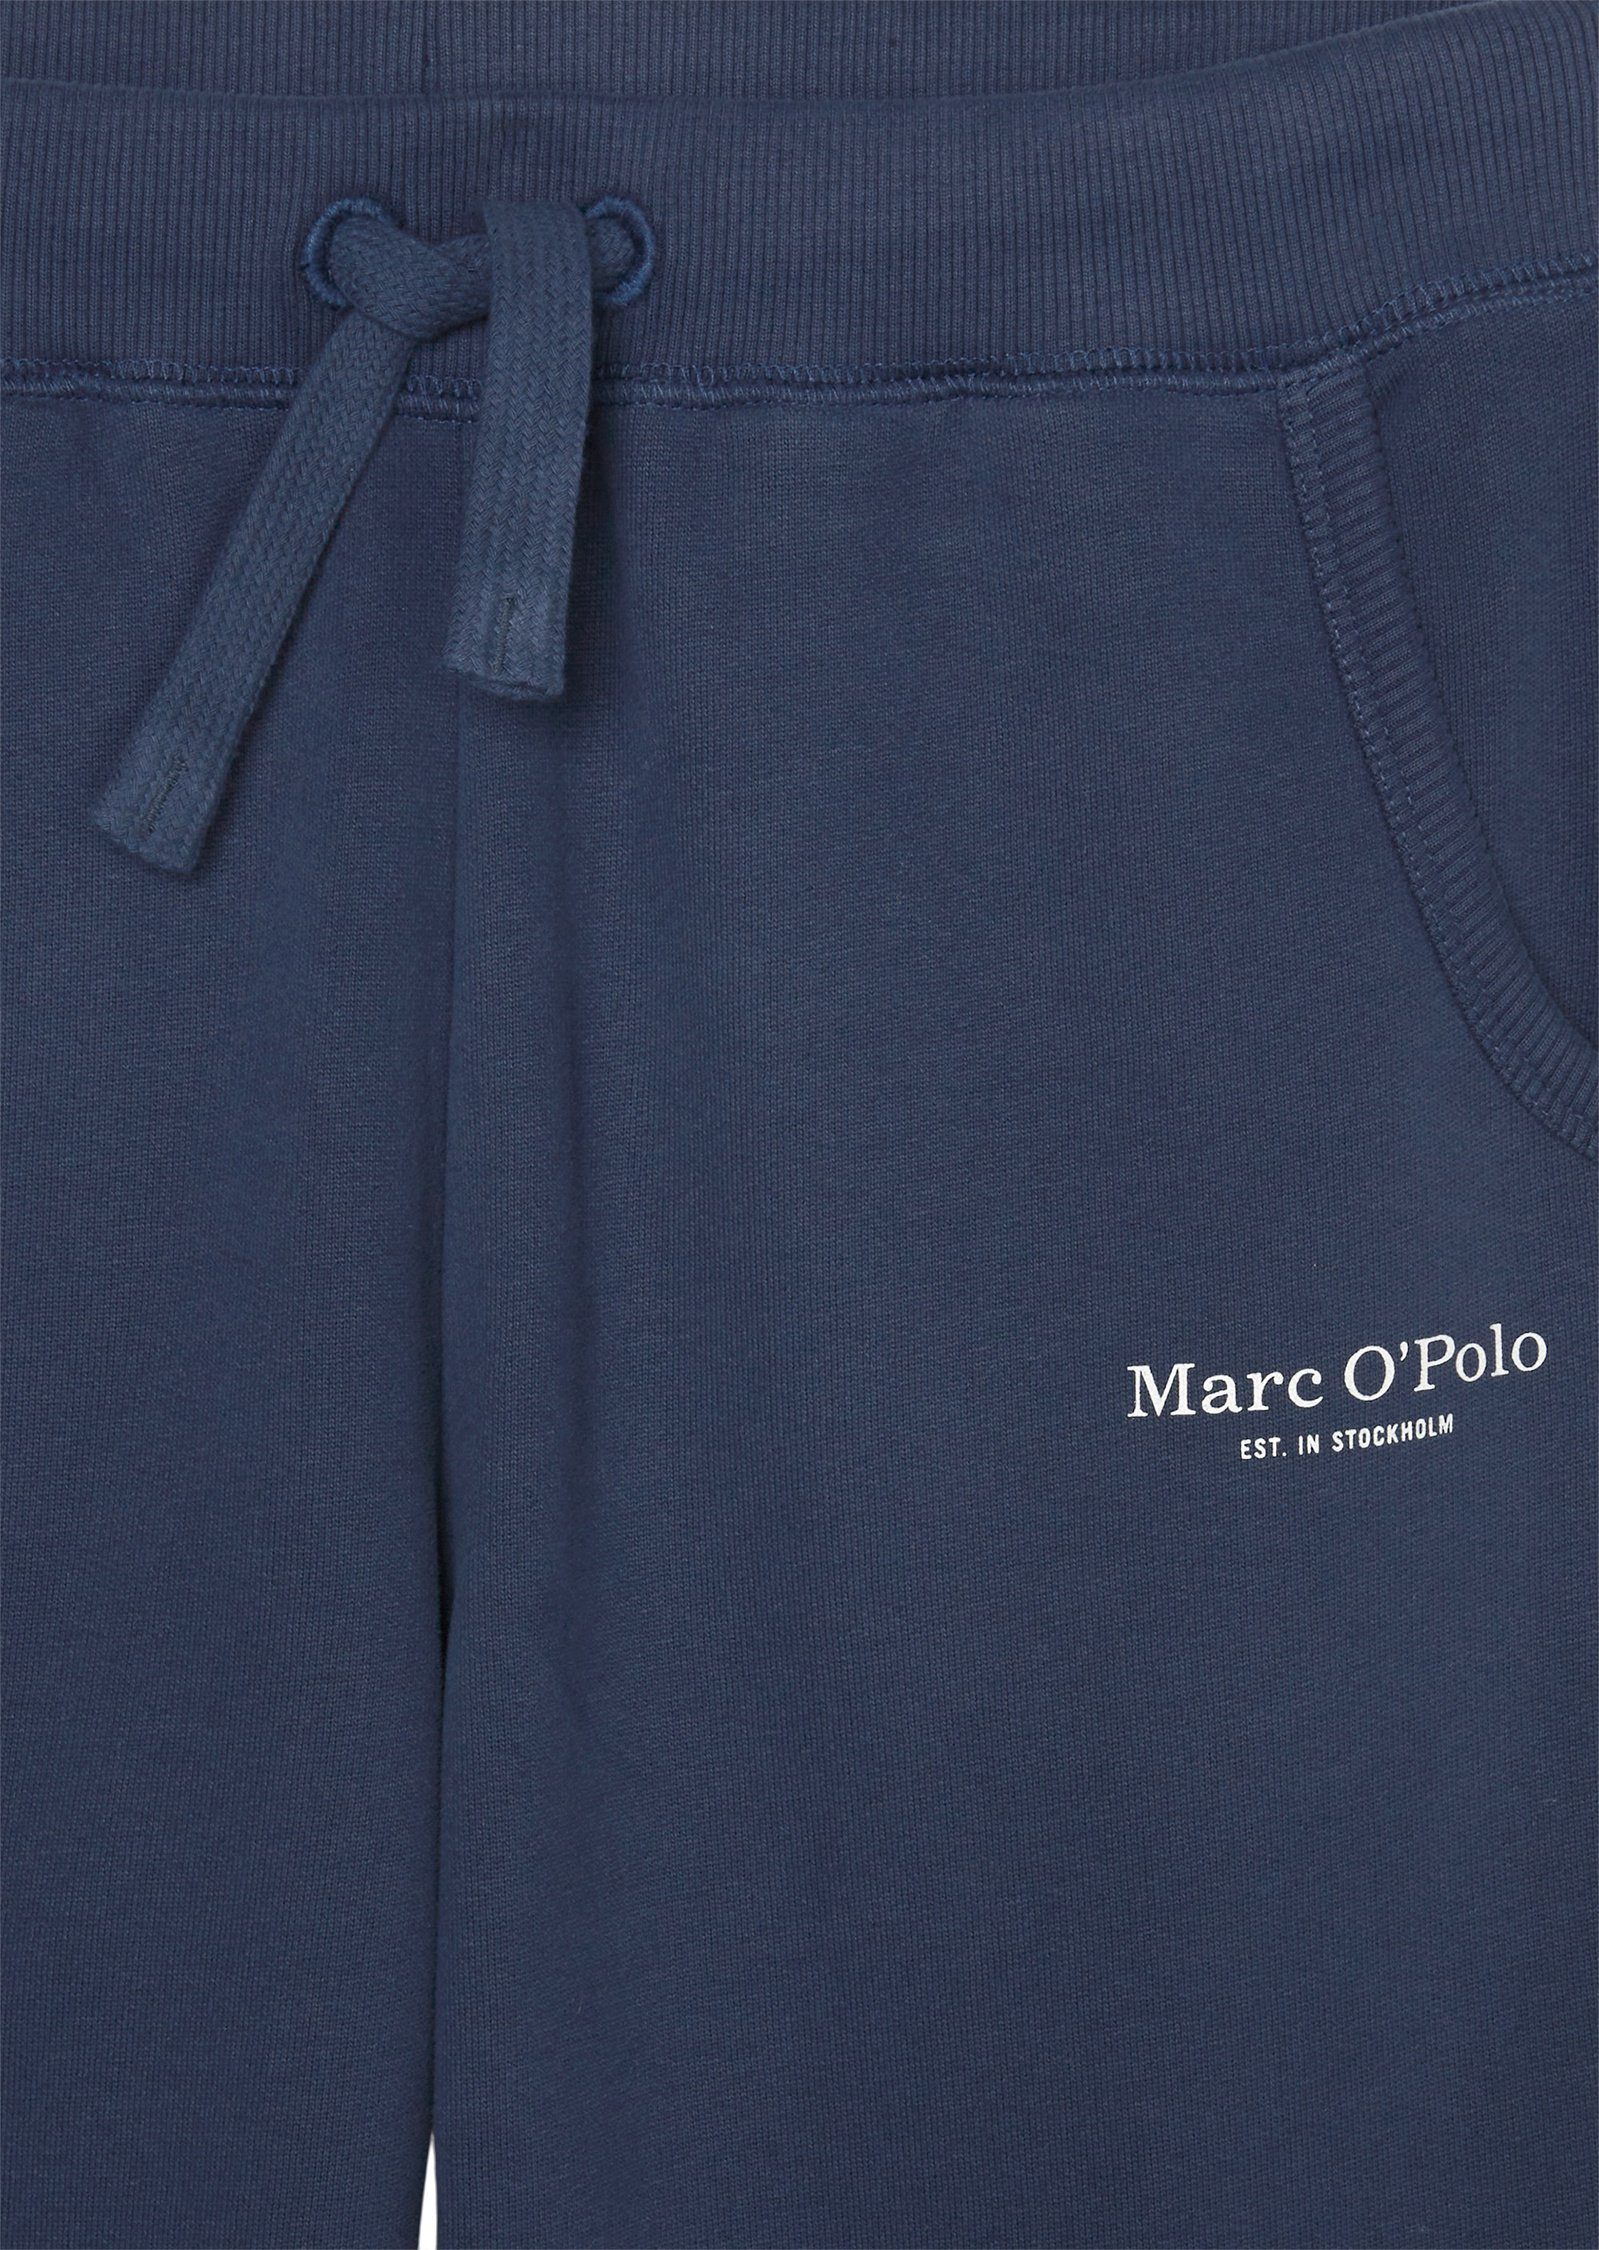 O'Polo Marc reiner aus 5-Pocket-Jeans Bio-Baumwolle